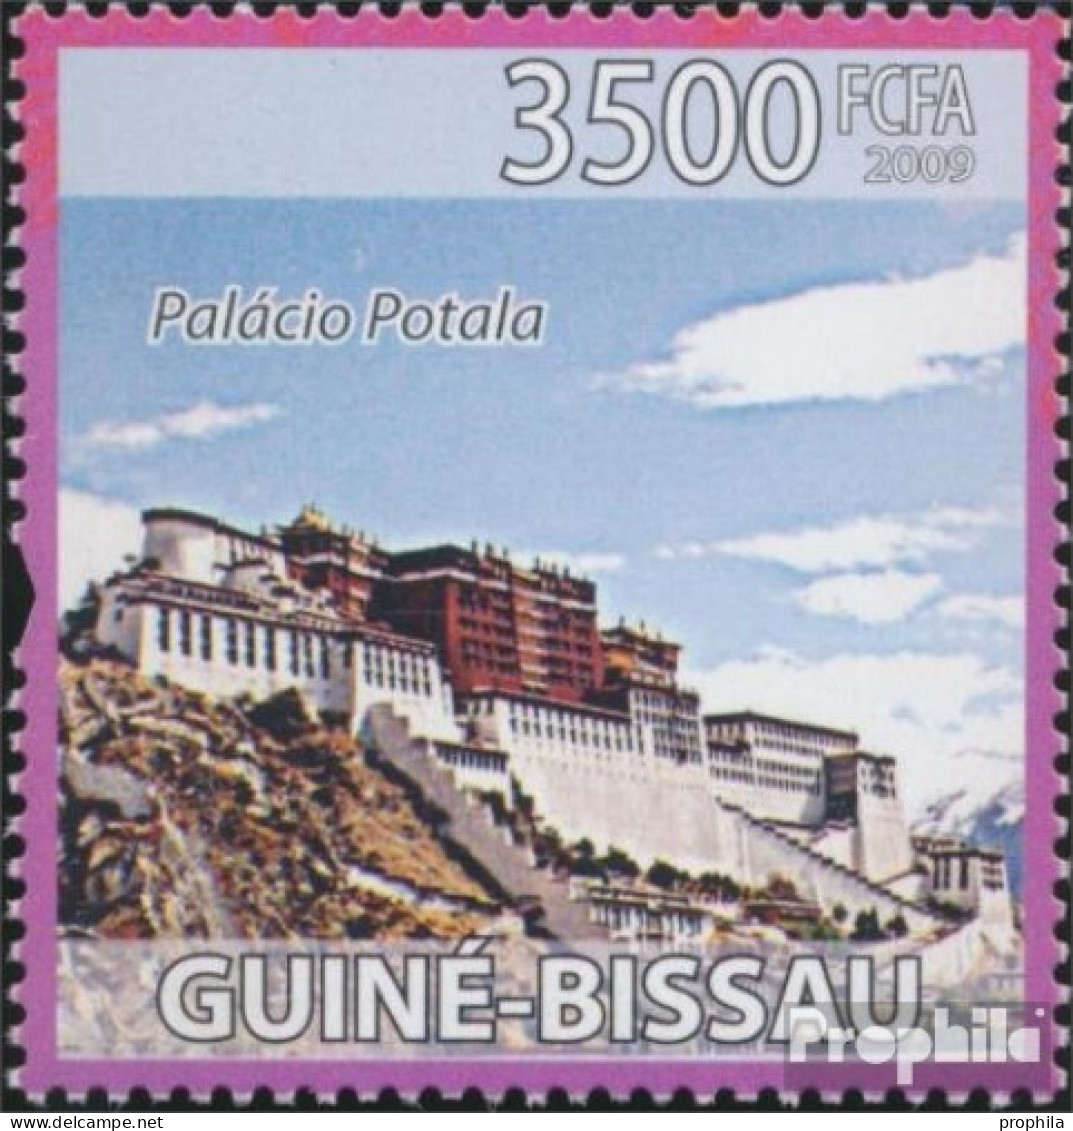 Guinea-Bissau 4216 (kompl. Ausgabe) Postfrisch 2009 Chinesische Kultur - Guinée-Bissau